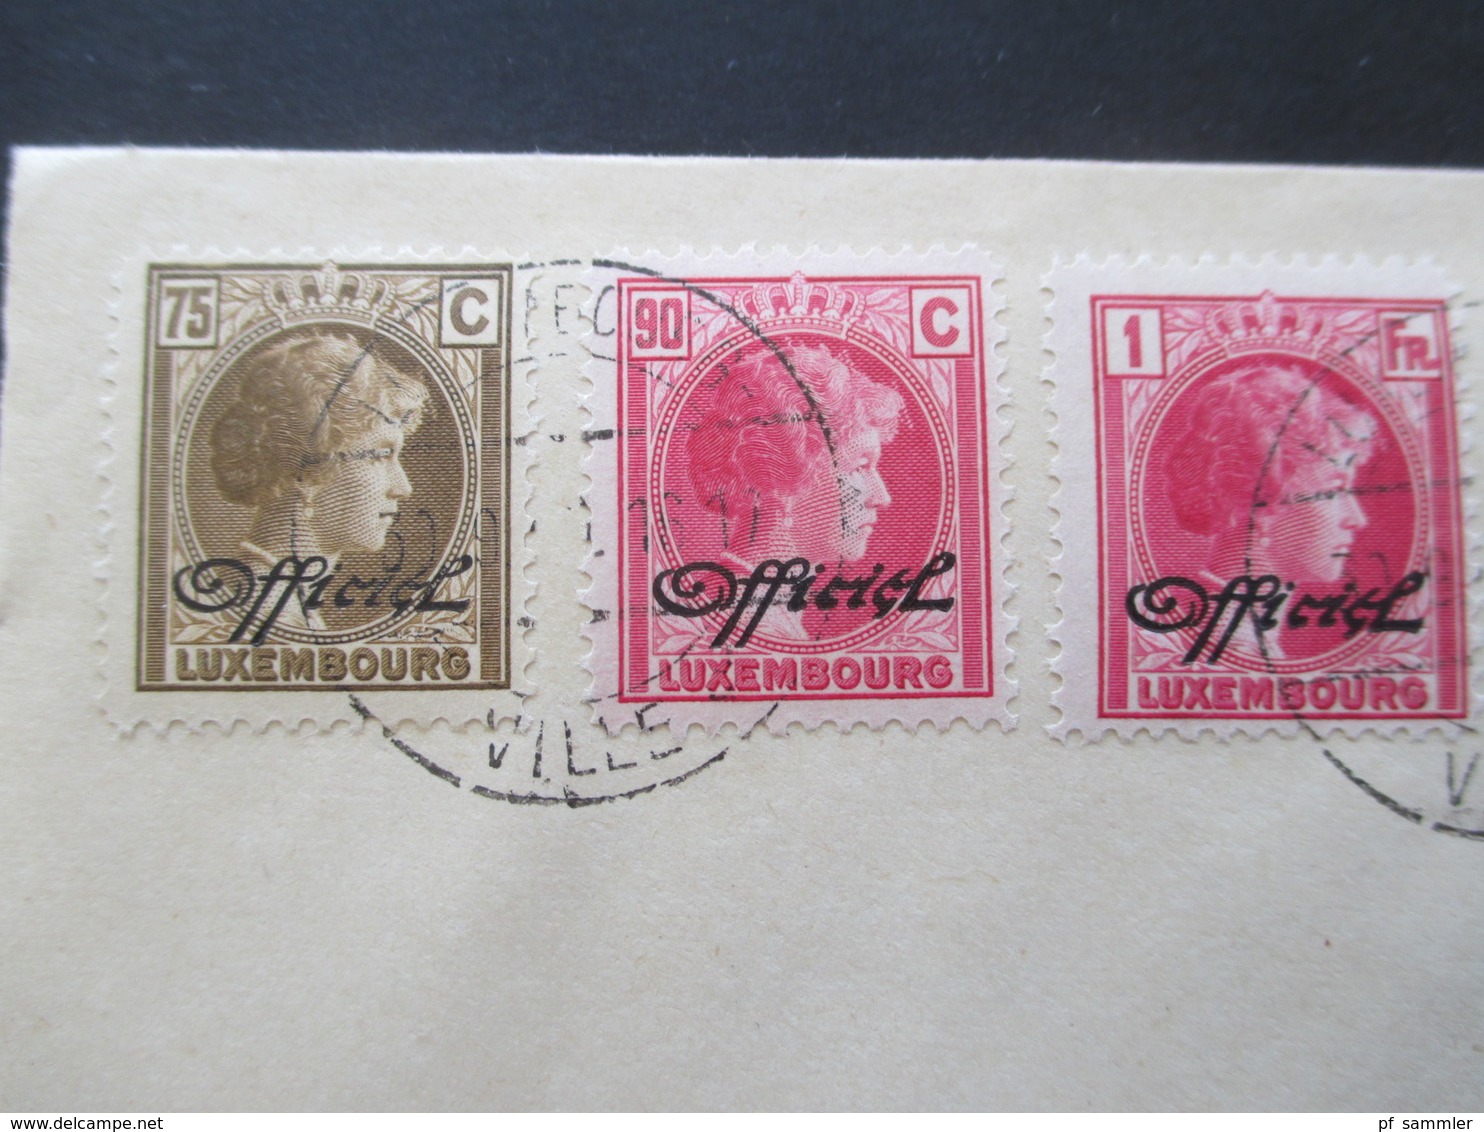 Luxemburg 1940 Dienstmarken Freimarken mit Aufdruck Officiel 18 Werte auf 2 Blano Umschlägen 5 Cent - 1 3/4 Fr.